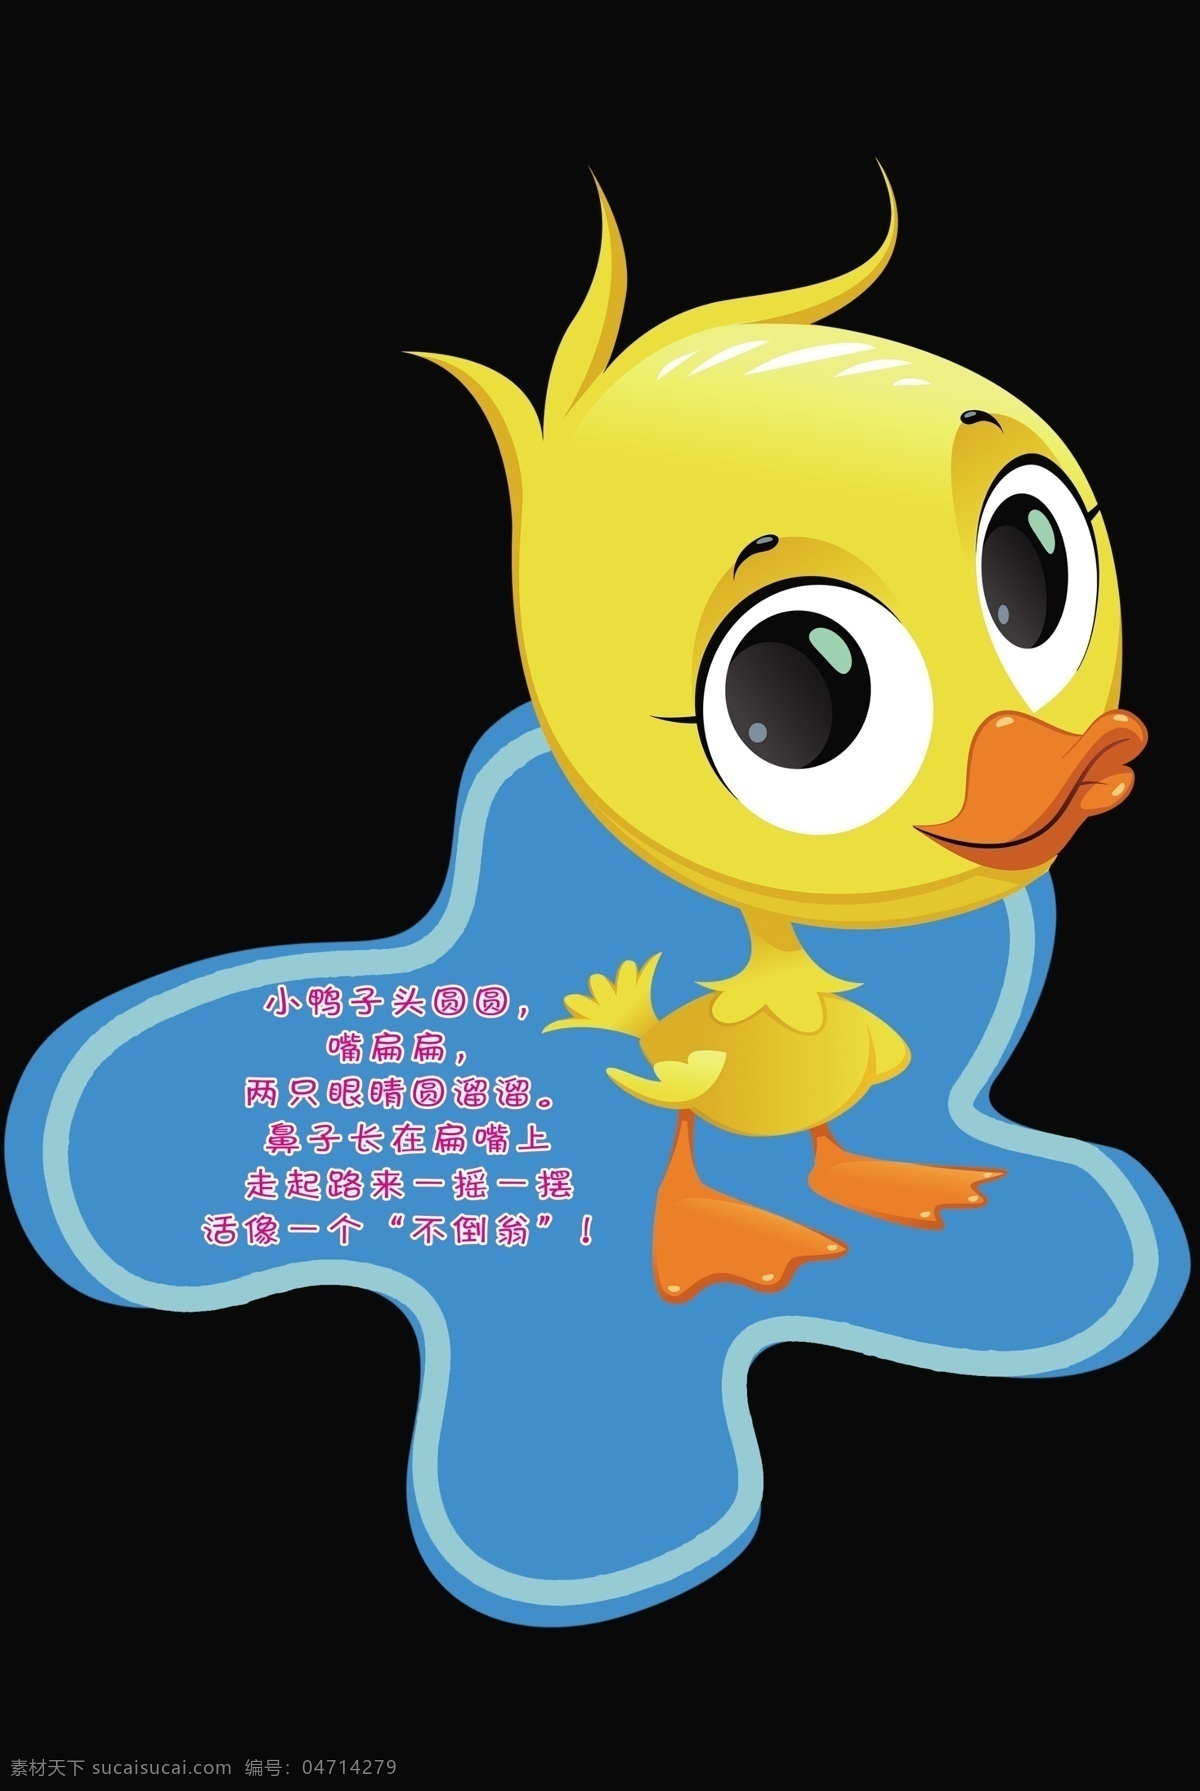 卡通小鸭子 卡通造型 幼儿园儿歌 小动物形状 小鸭子水